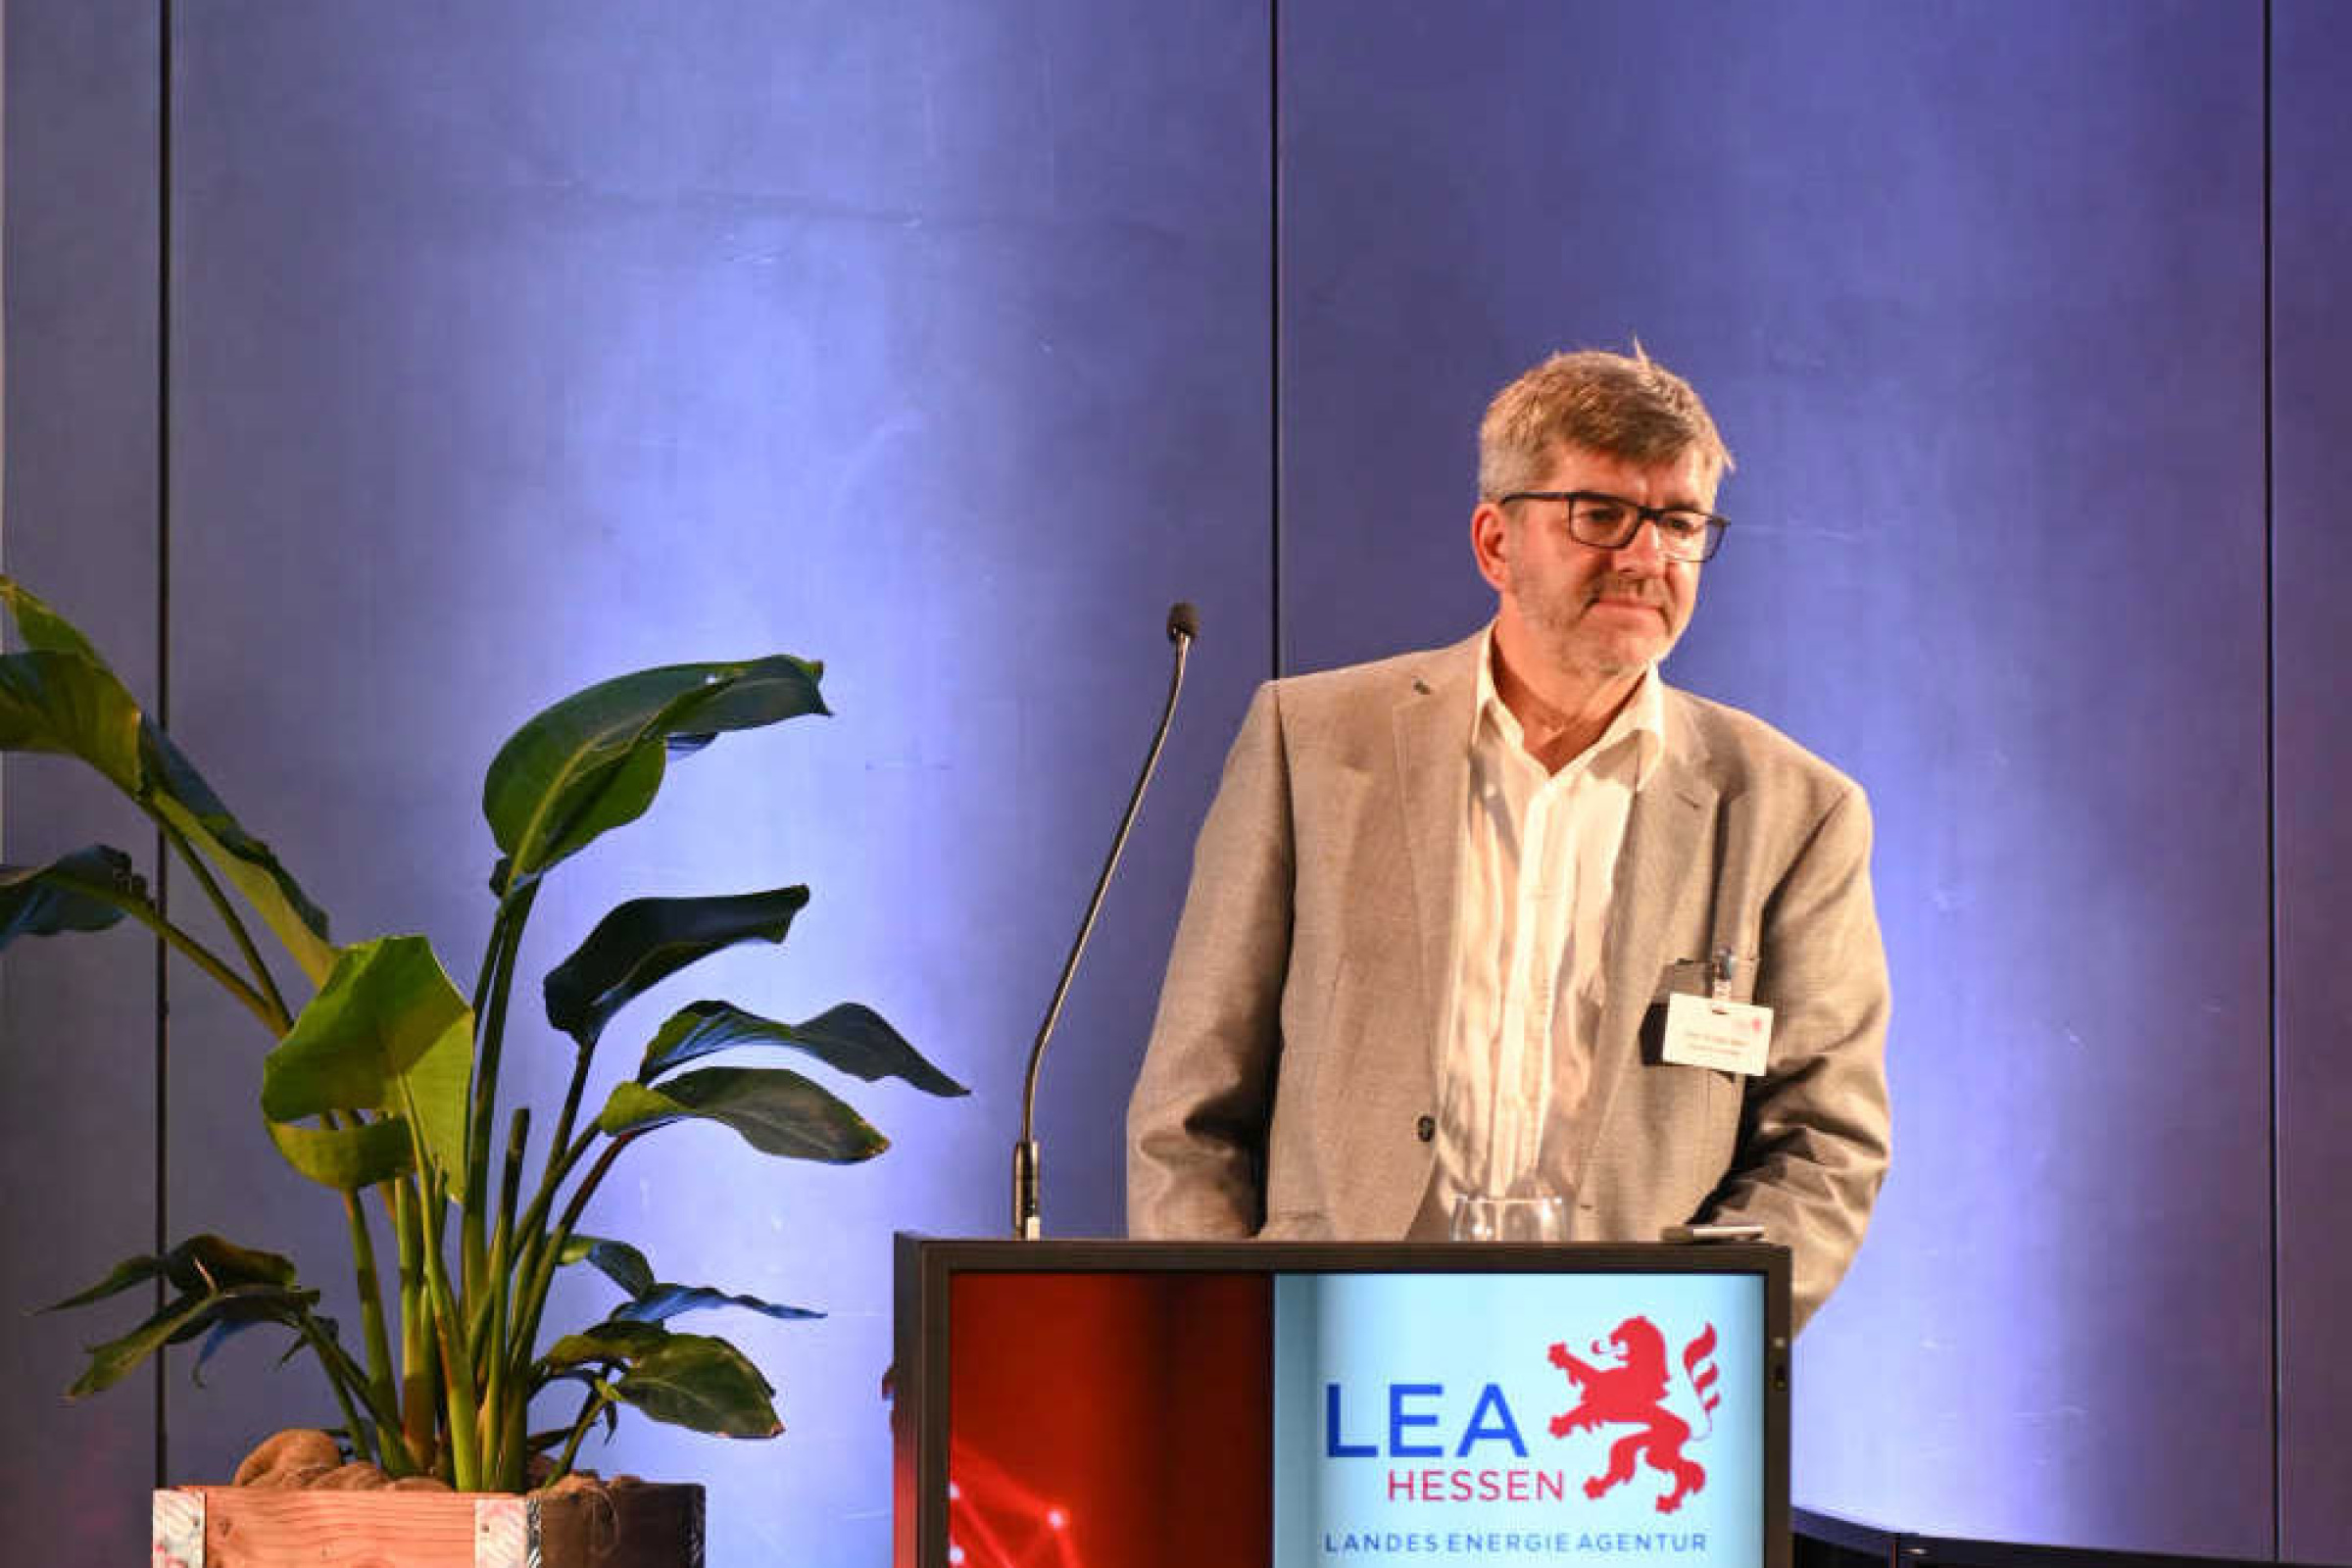 Mann steht an einem Rednerpult mit der Aufschrift "LEA Hessen, Geothermie Forum Hessen 2022".